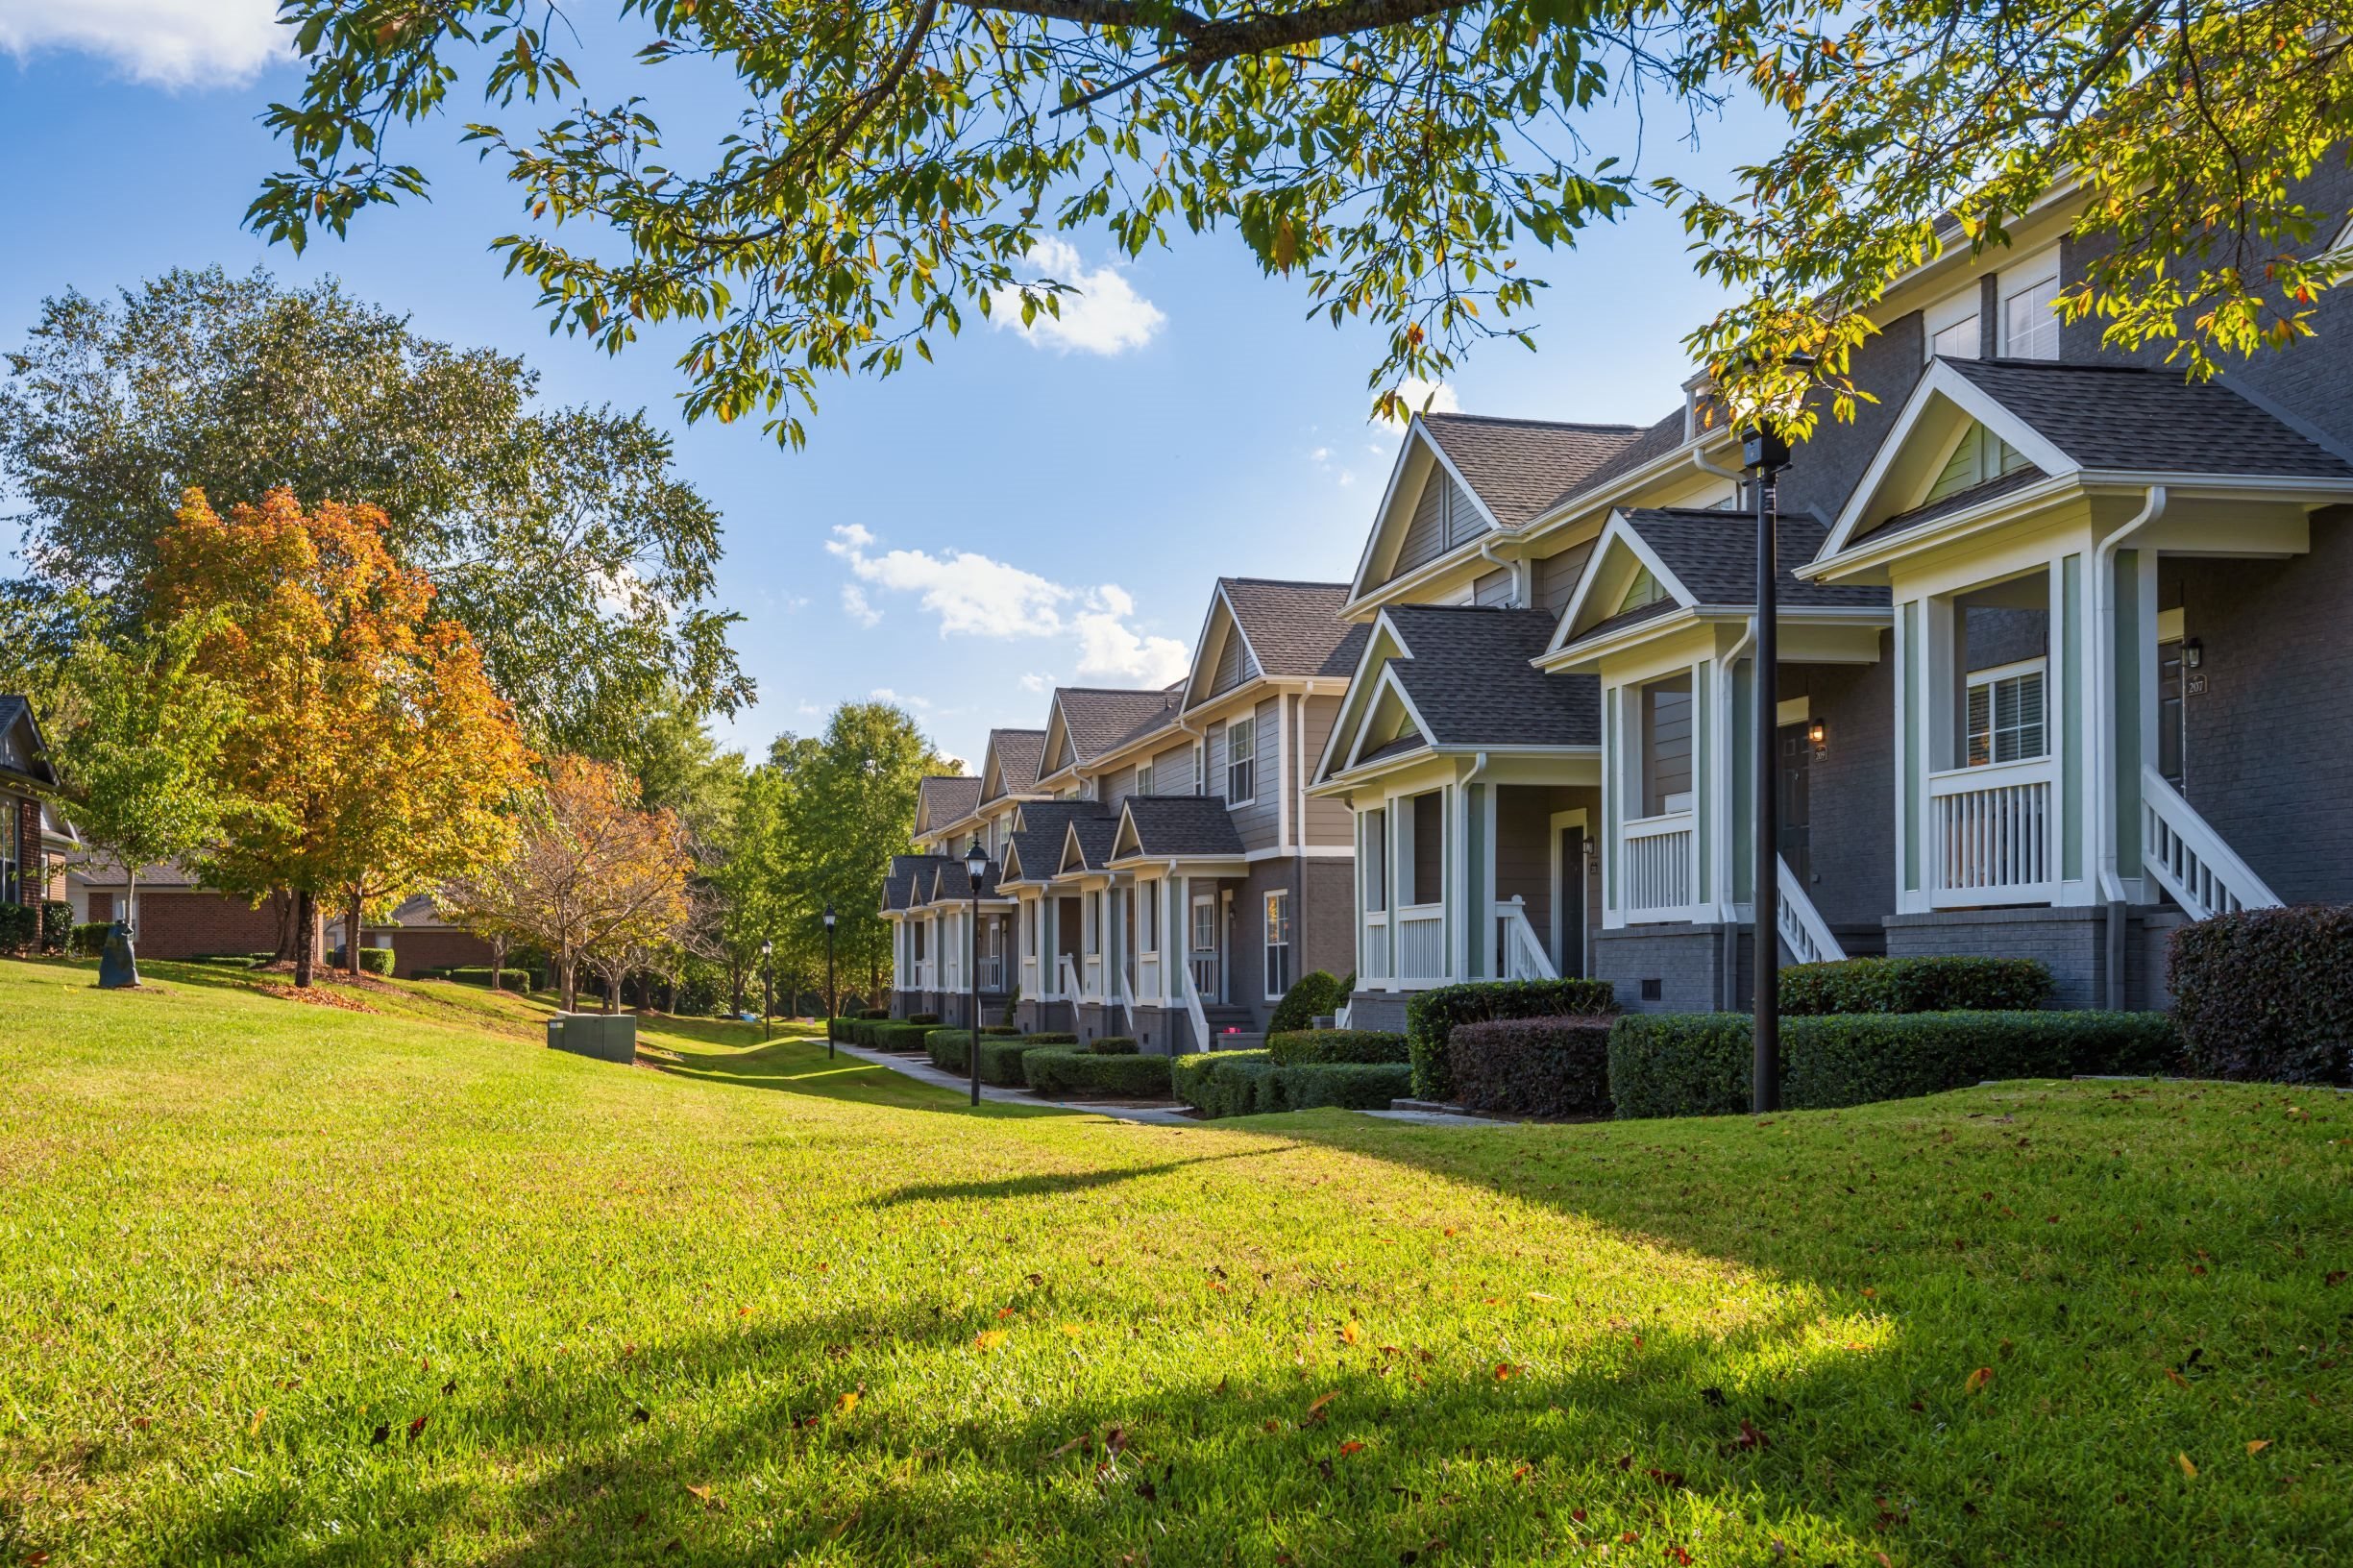 501 Estates apartment homes in Durham, NC